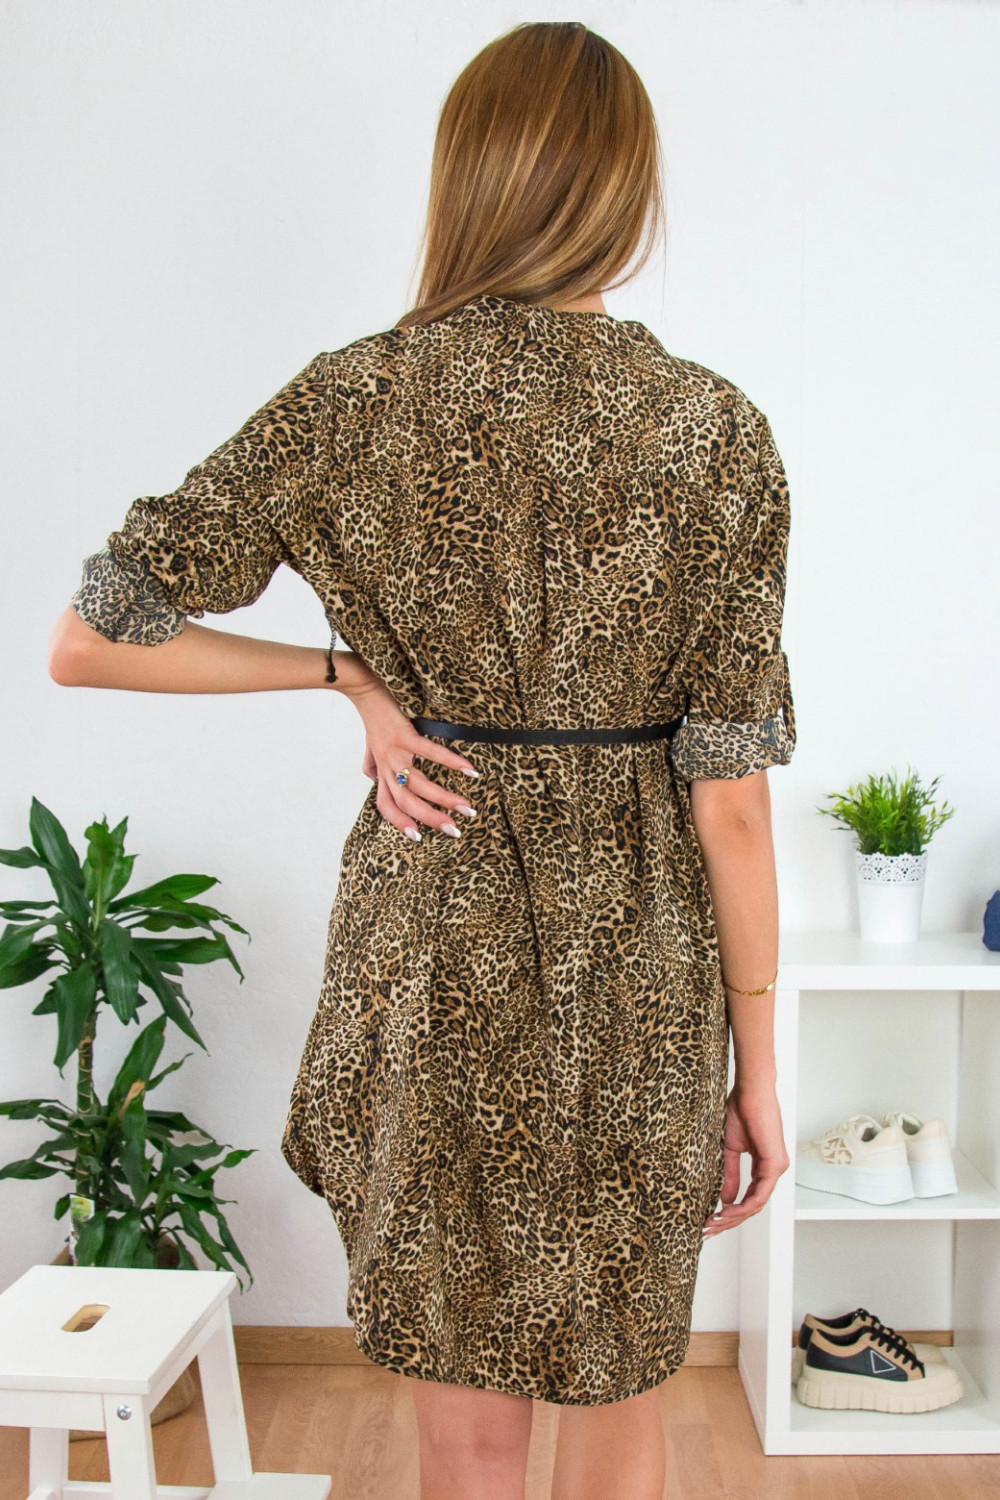 Γυναικείο ασύμμετρο animal print φόρεμα μαο γιακά 5398